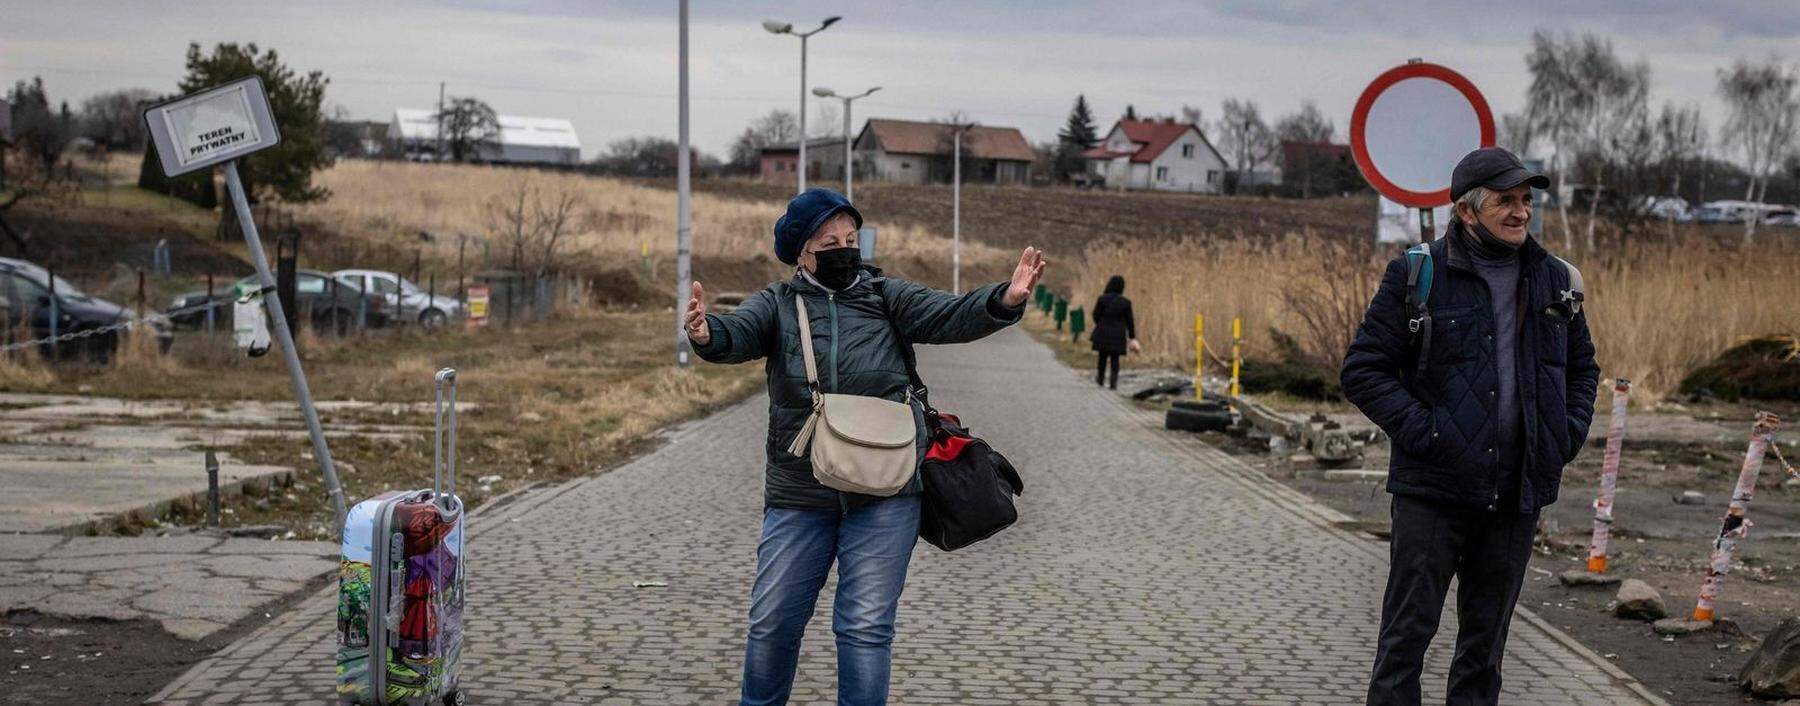 Kommen bald Millionen? Hier ein Fußgängergrenzübergang an der polnisch-ukrainischen Grenze nahe Przemyśl, den etwa ukrainische Gastarbeiter oft benützen. 